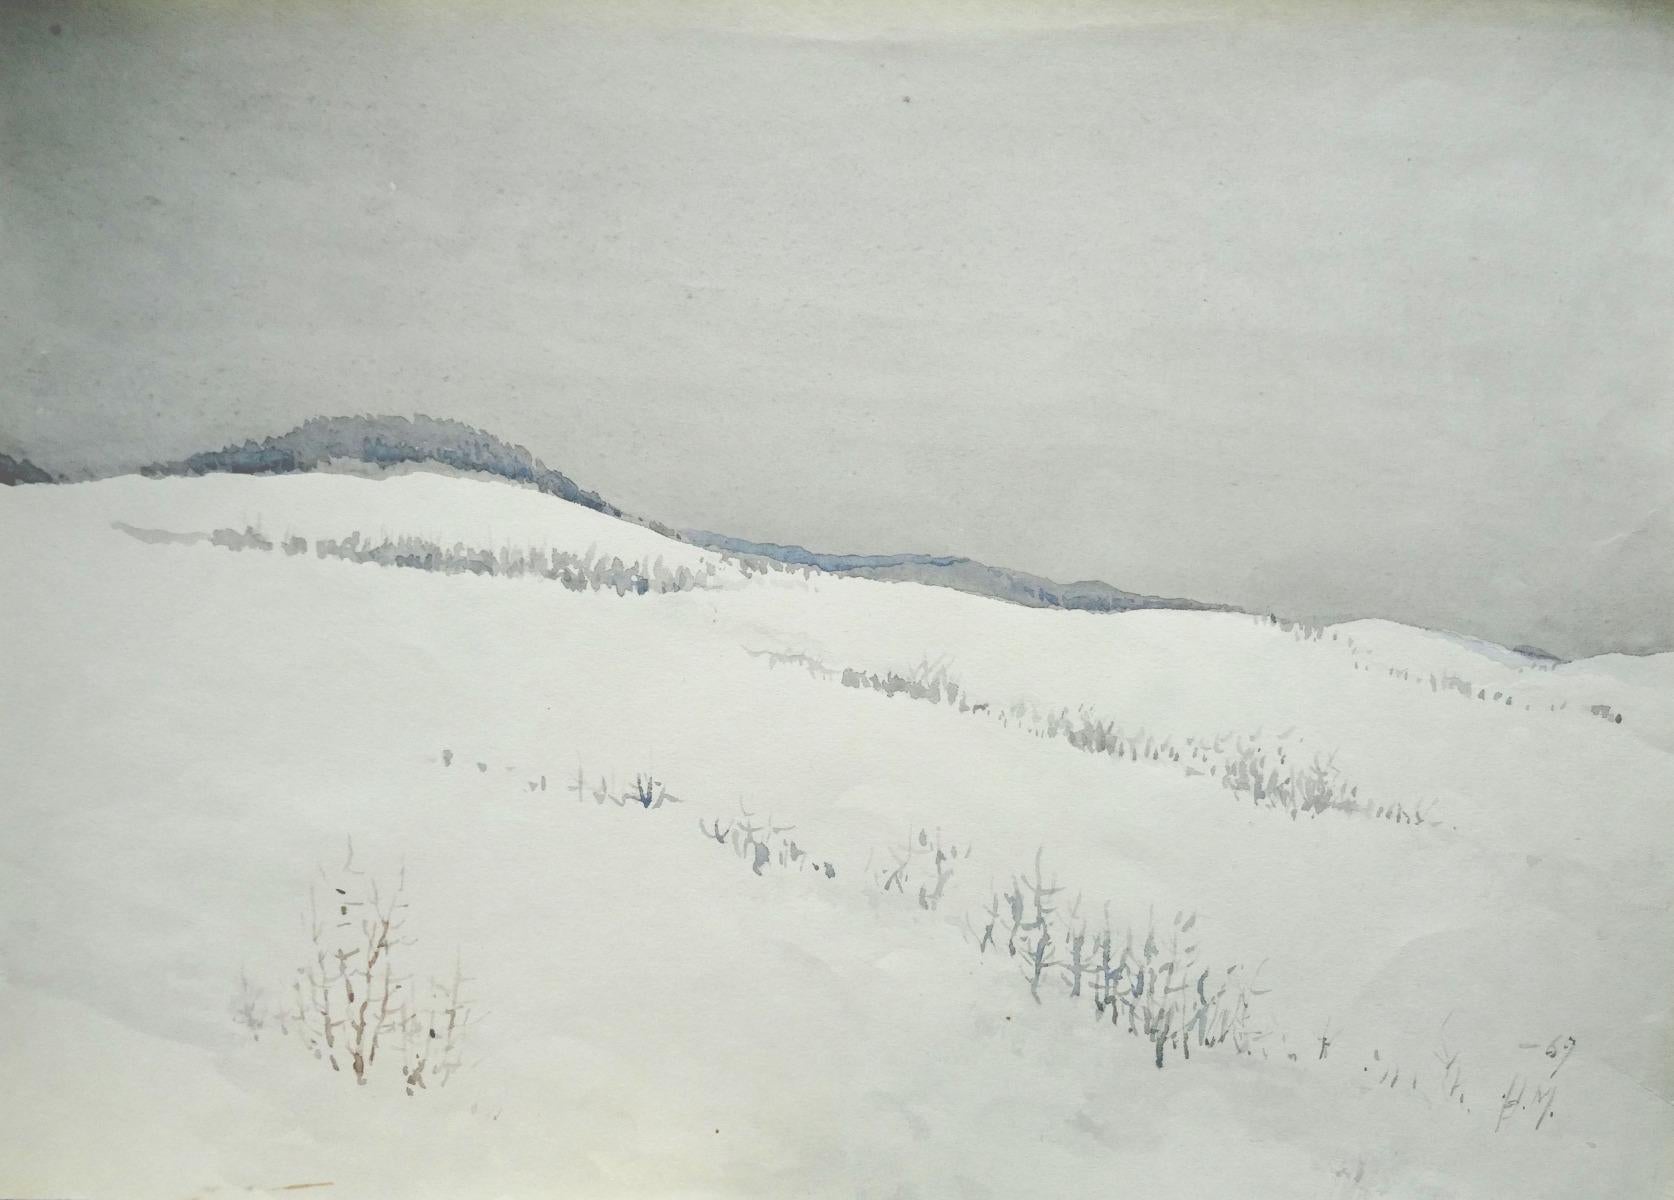 Herberts Mangolds Landscape Art - Winter  1969, paper/watercolor, 29x40.5 cm